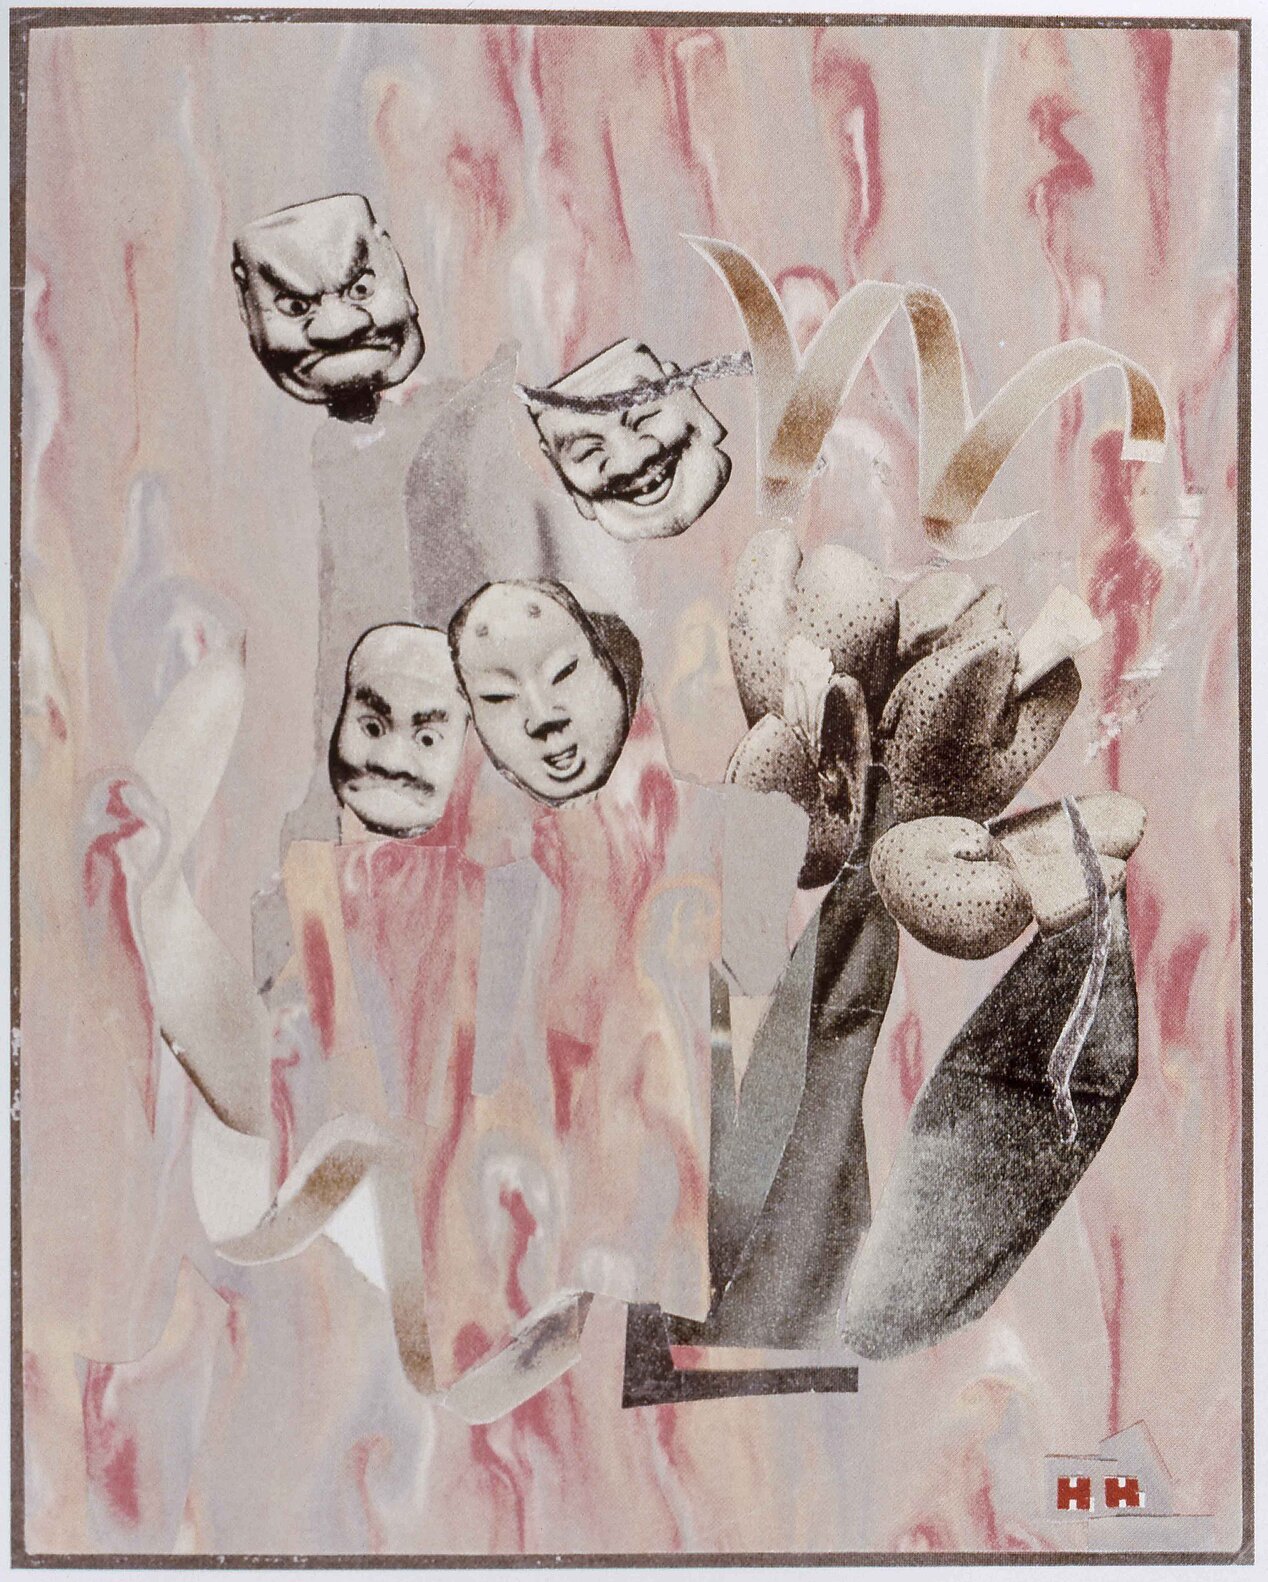 Man sieht eine Collage von Hannah Höch. Es sind beige-rosane Farben und man sieht mehrere Masken und eine Blume.